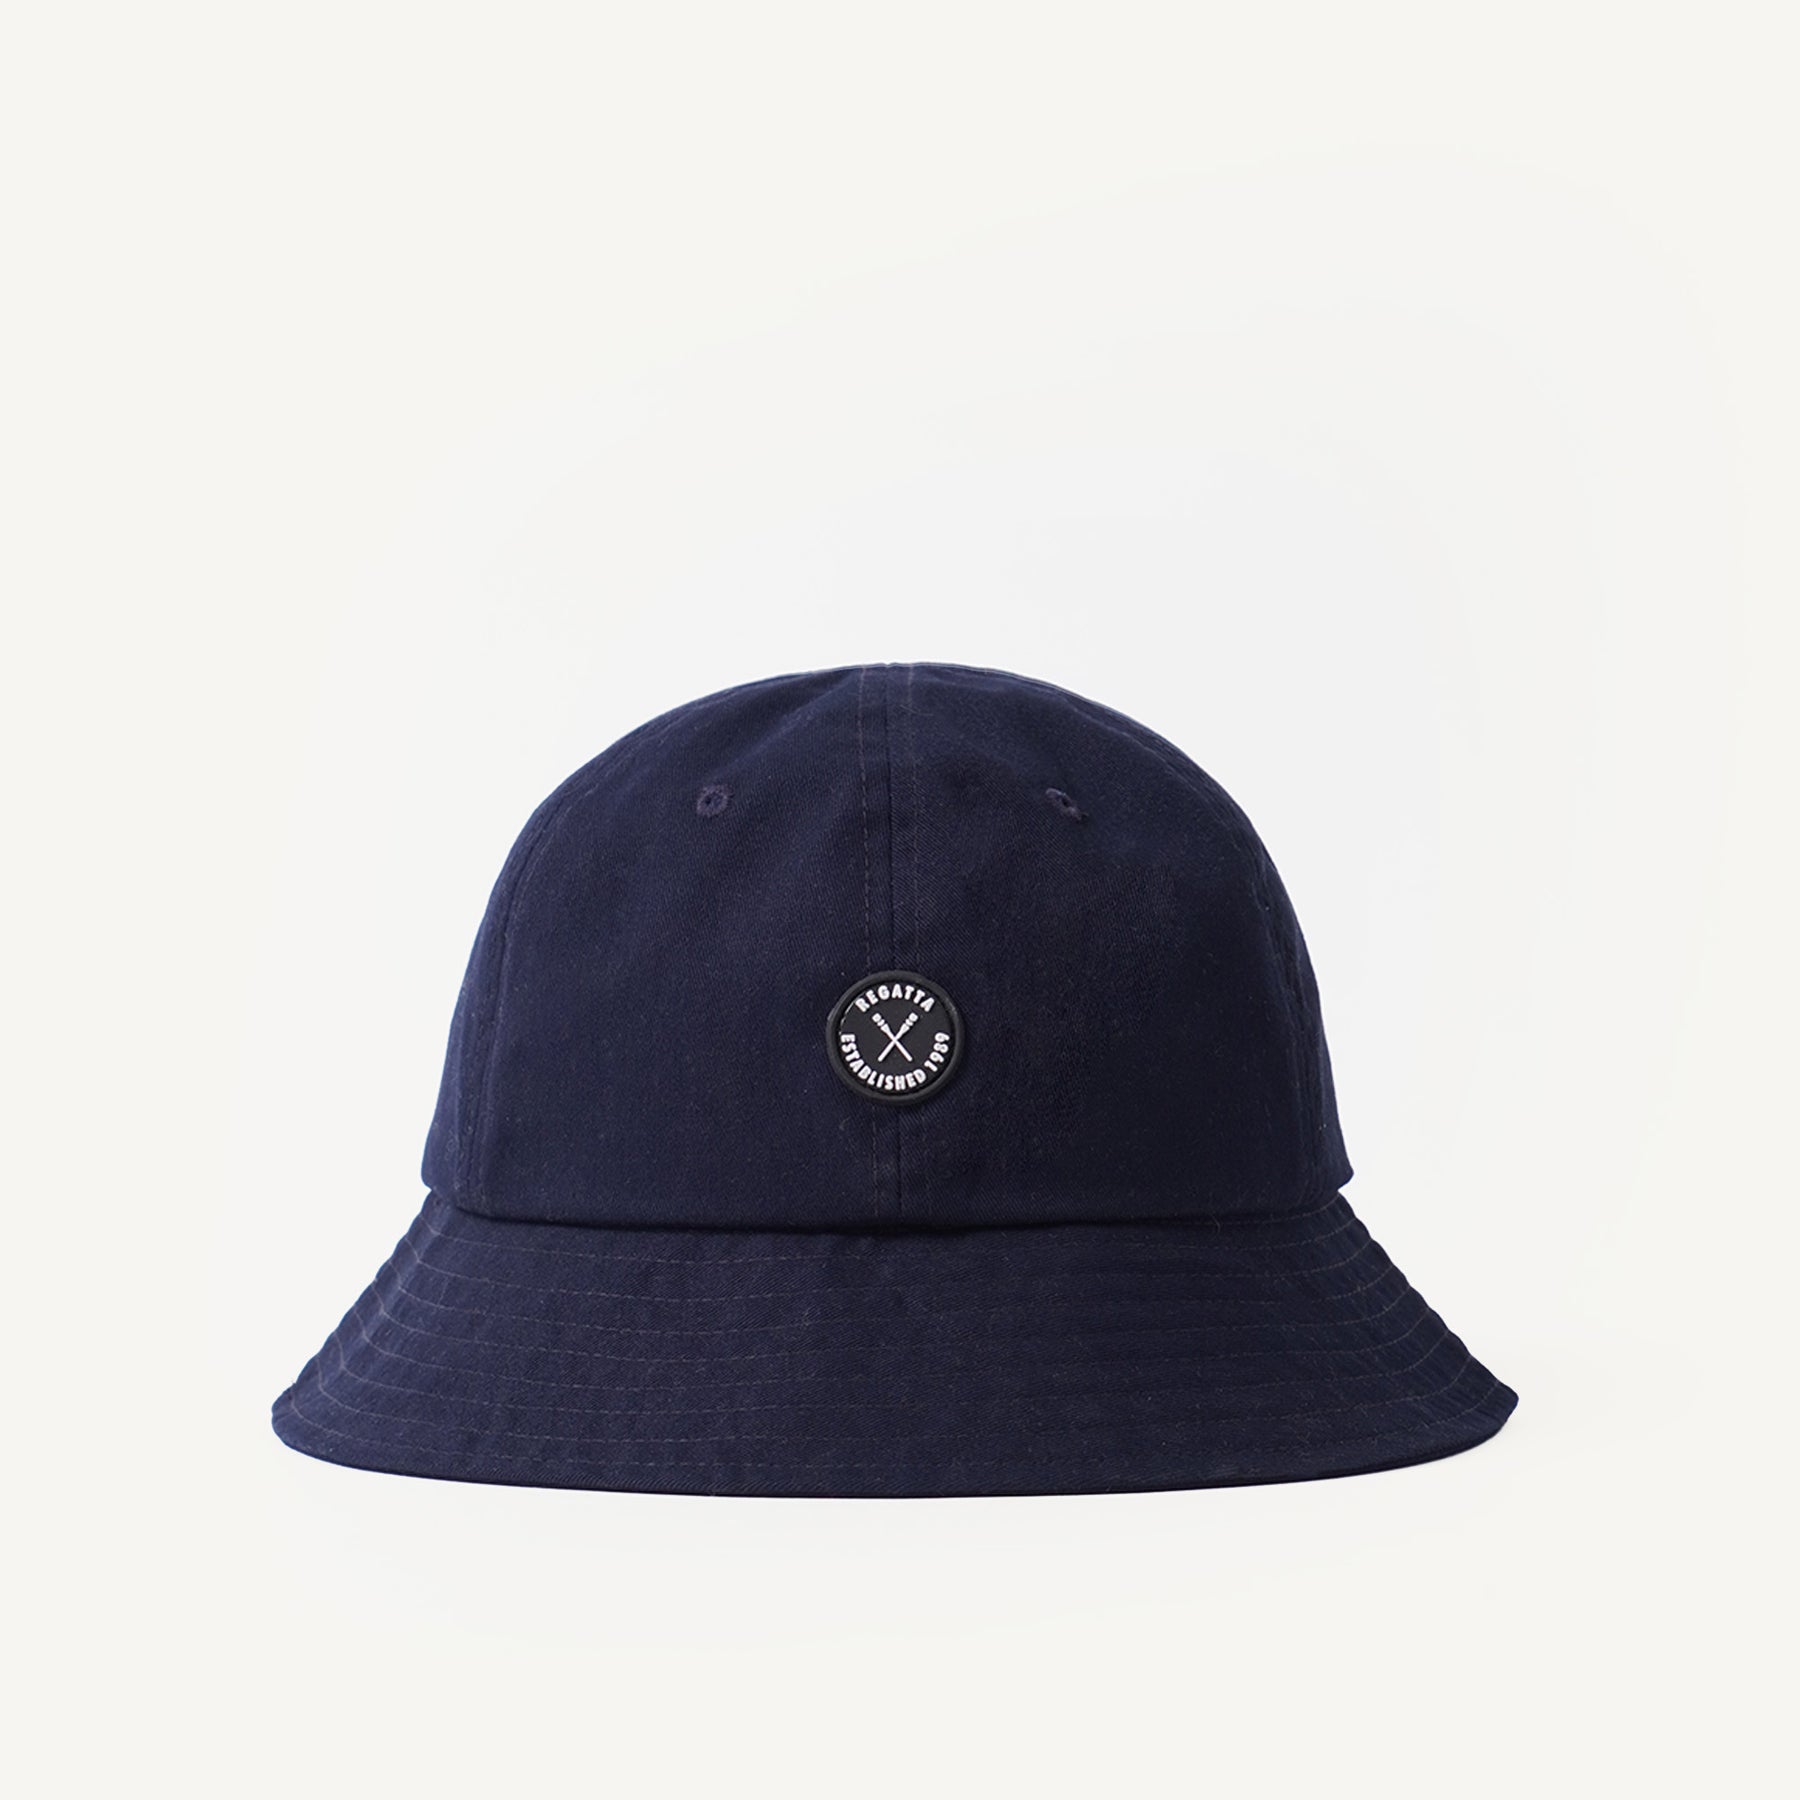 Dome Bucket Hat – Regatta Lifestyle